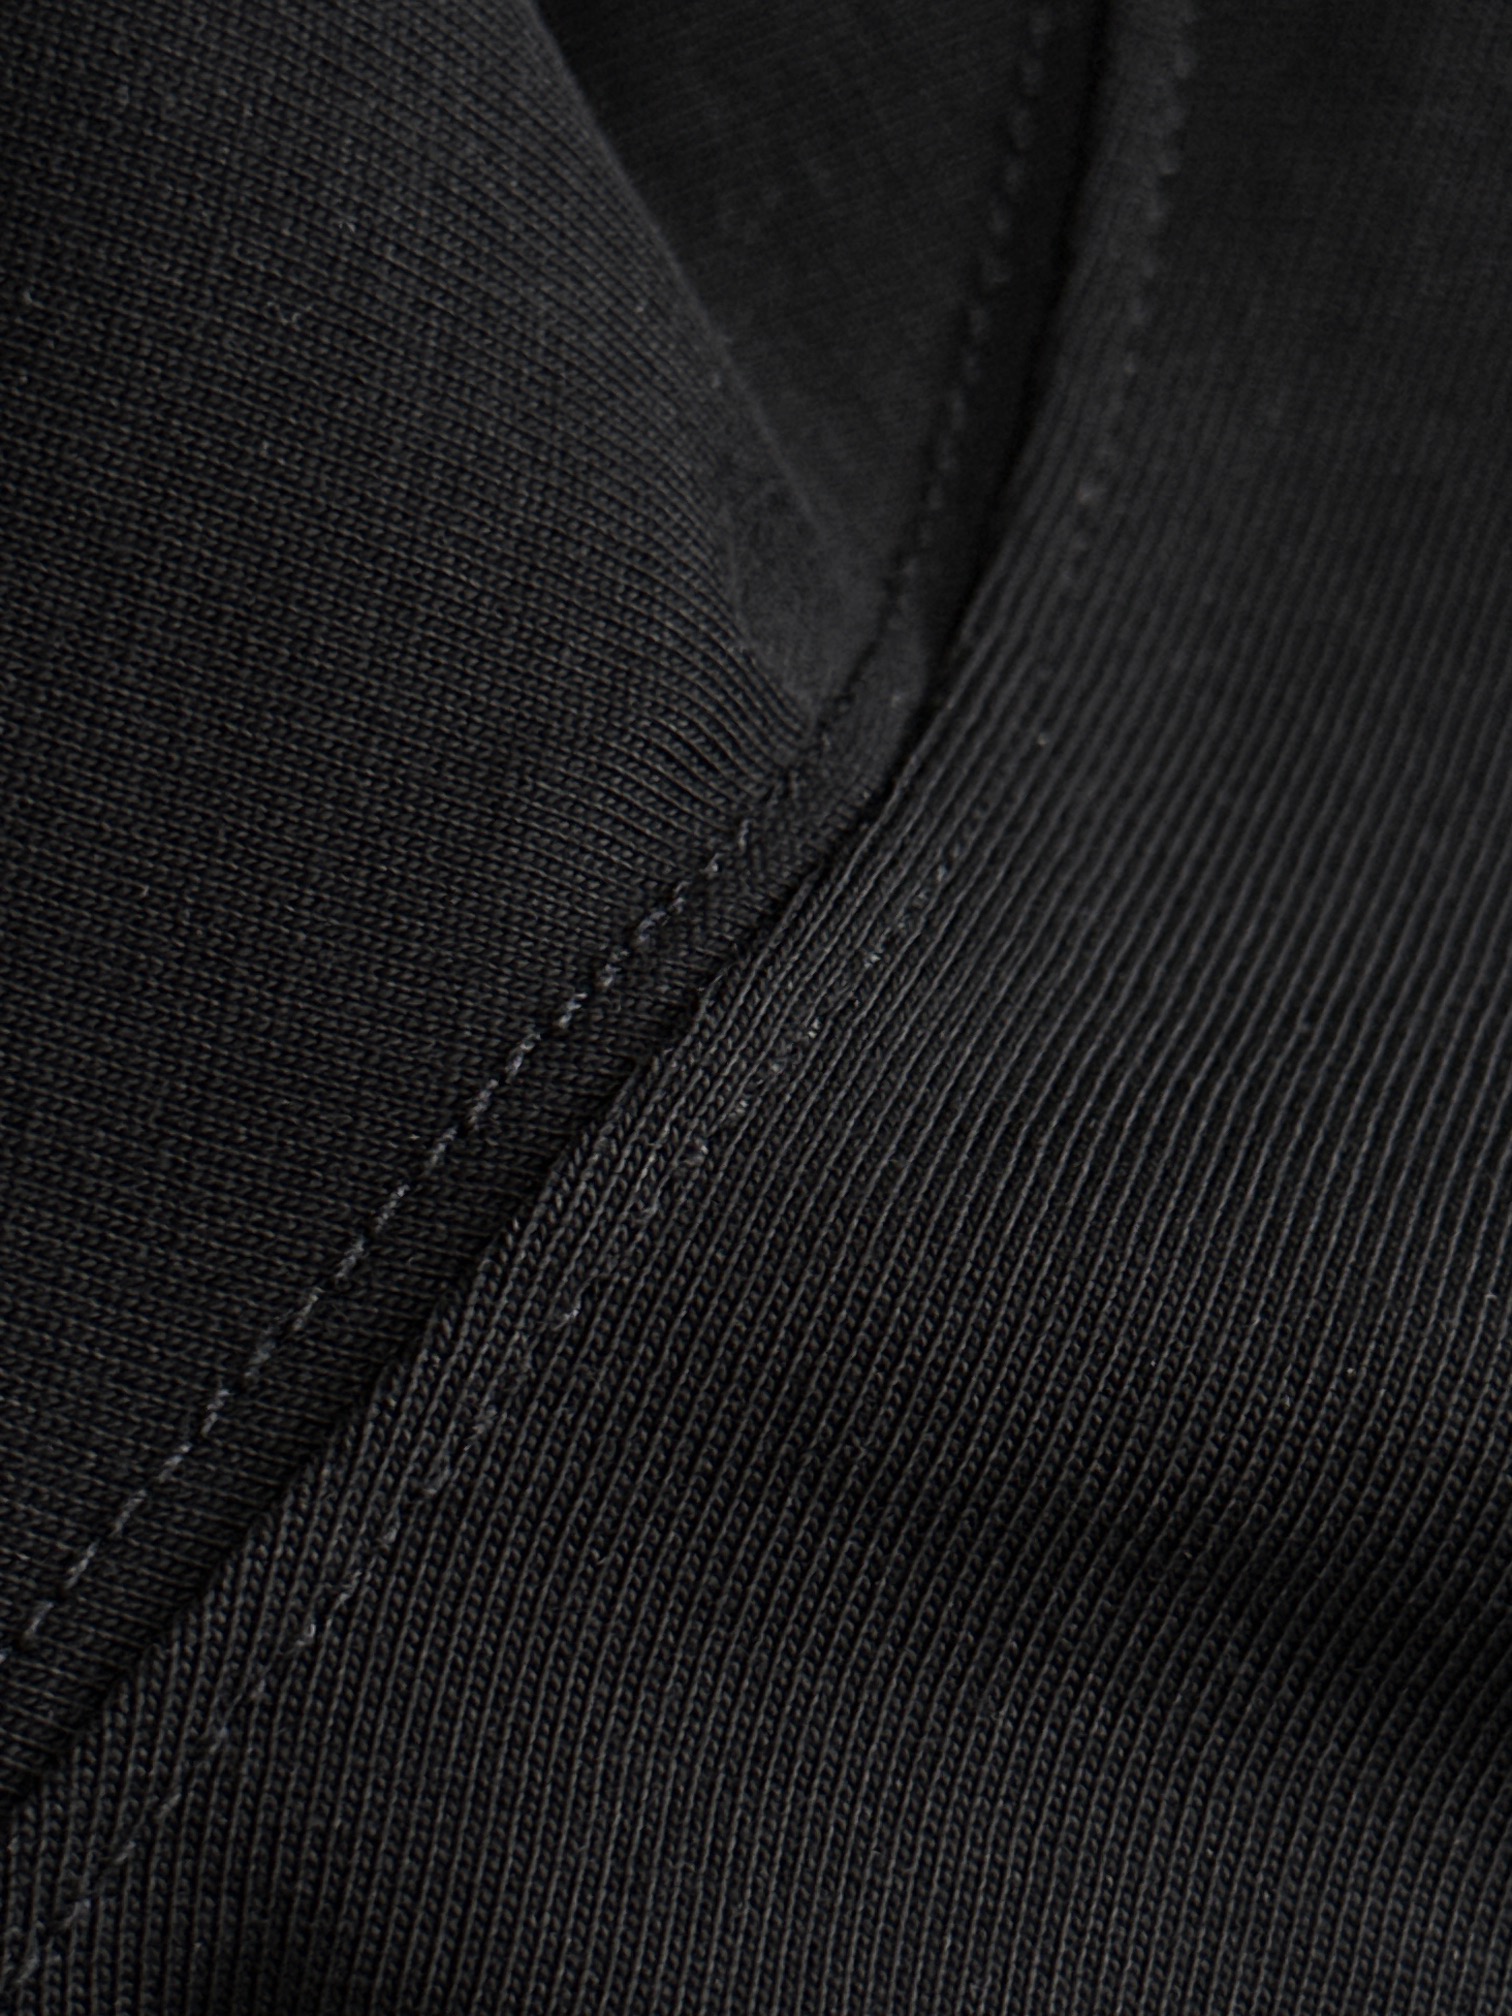 ss范家纯棉最新最顶级版本简约款烫钻人头潮流短袖最顶级的品质专柜原单短袖顶级制作工艺进口面料专柜款独特设